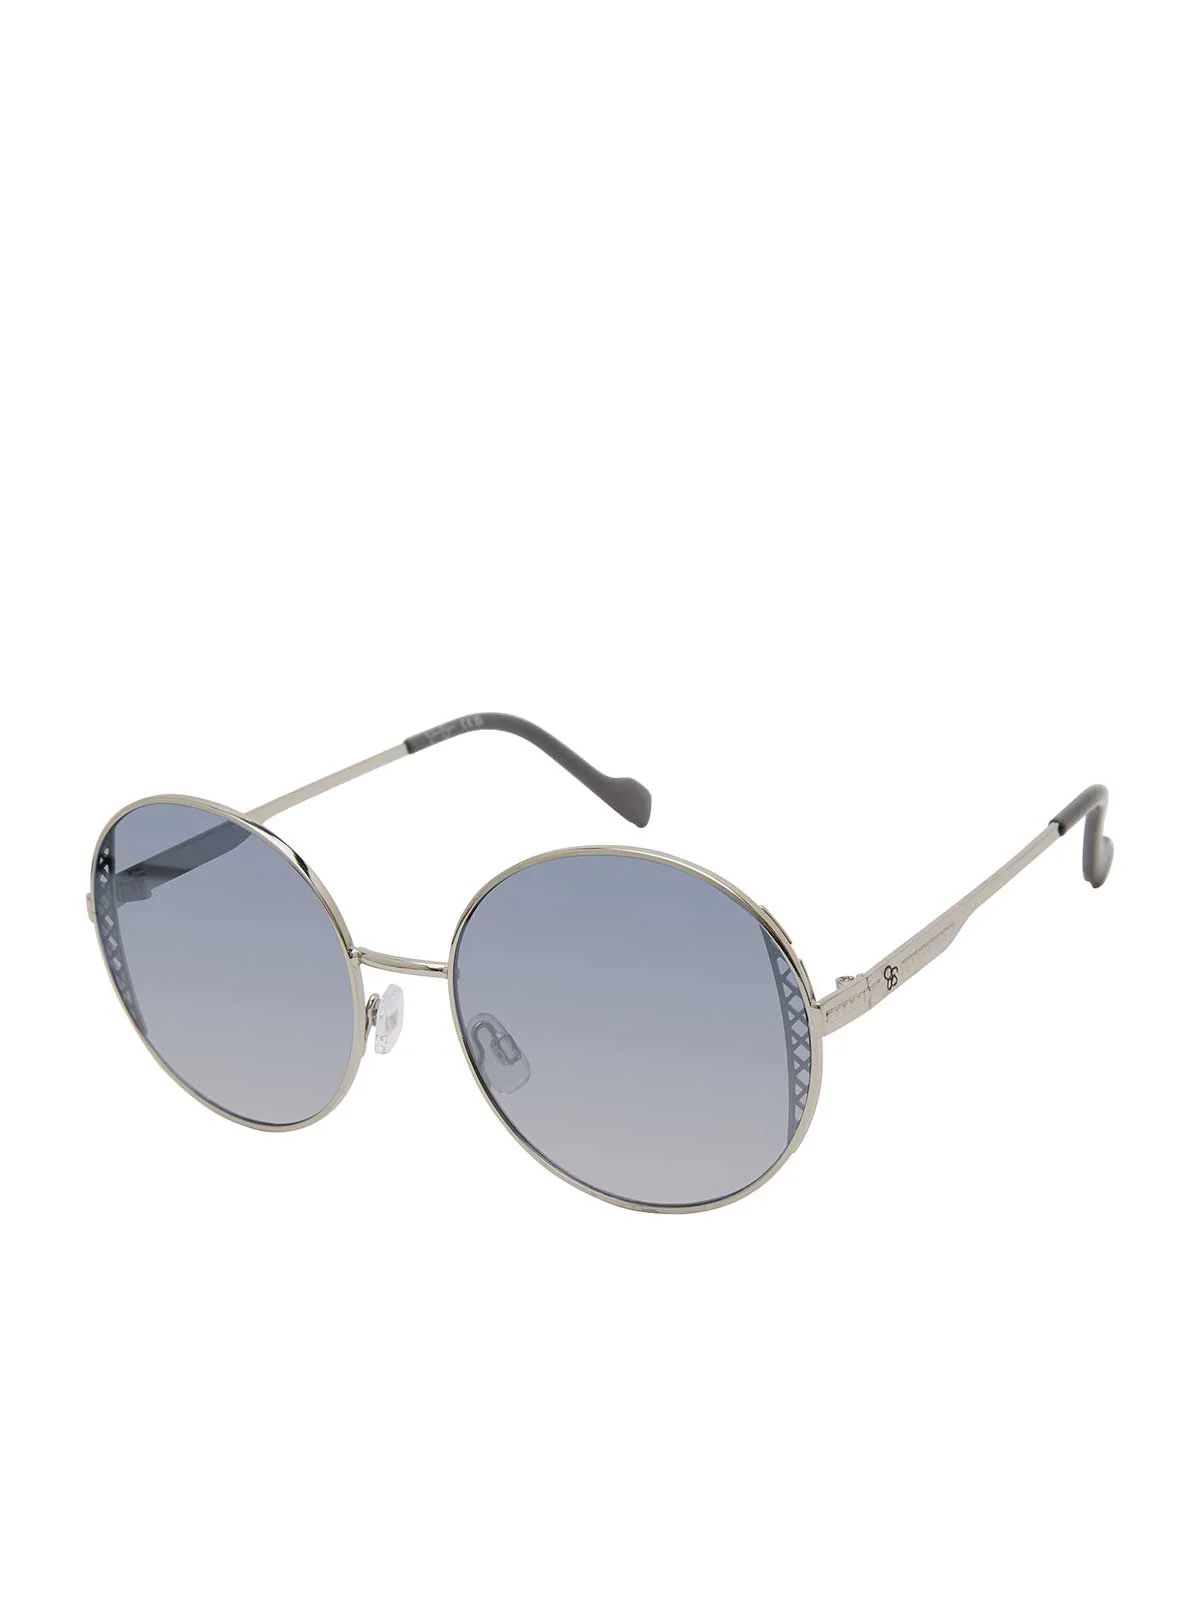 Metal Round Sunglasses in Silver | Jessica Simpson E Commerce